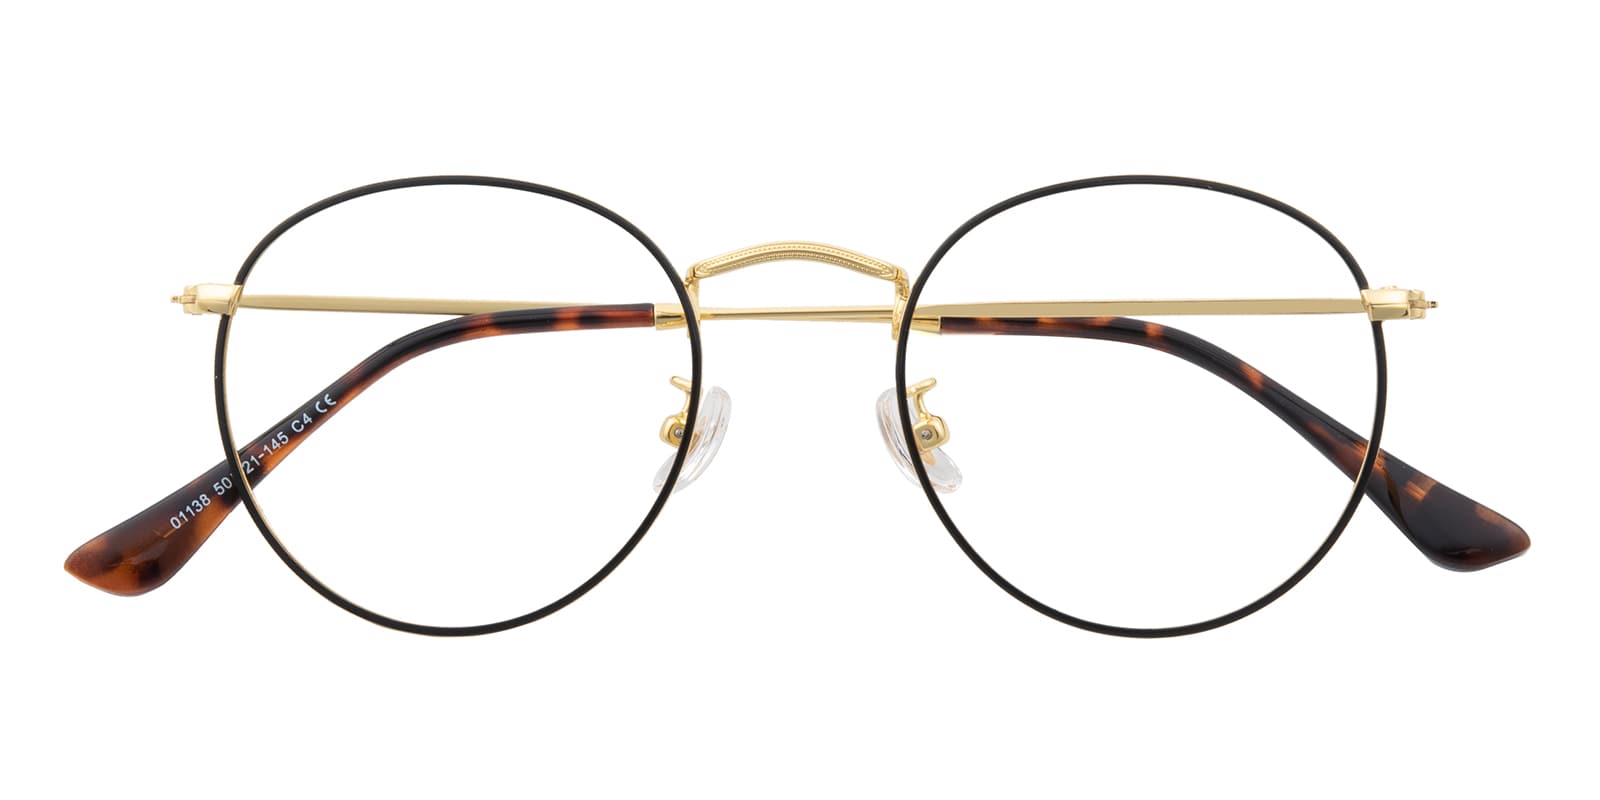 Round Eyeglasses, Full Frame Black/Golden Metal - FM1666